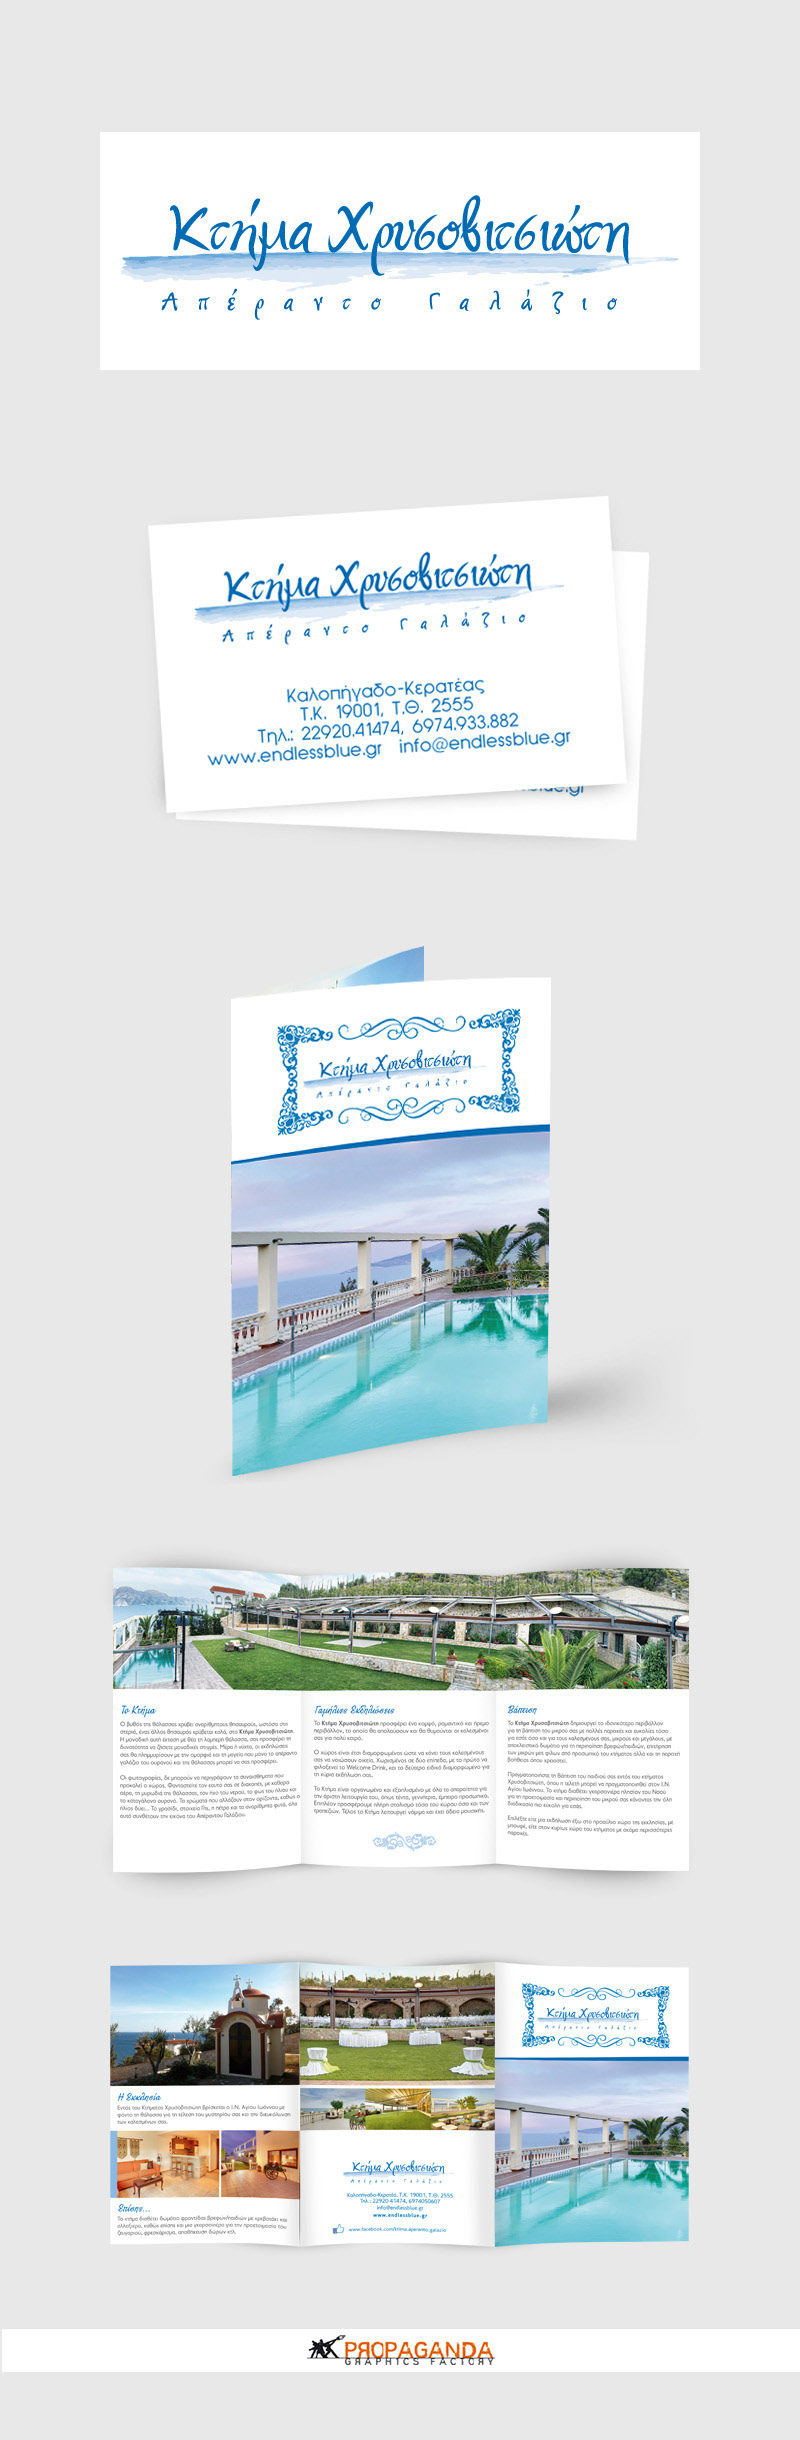 endless blue estate wedding estate estate logo estate brochure brochure design